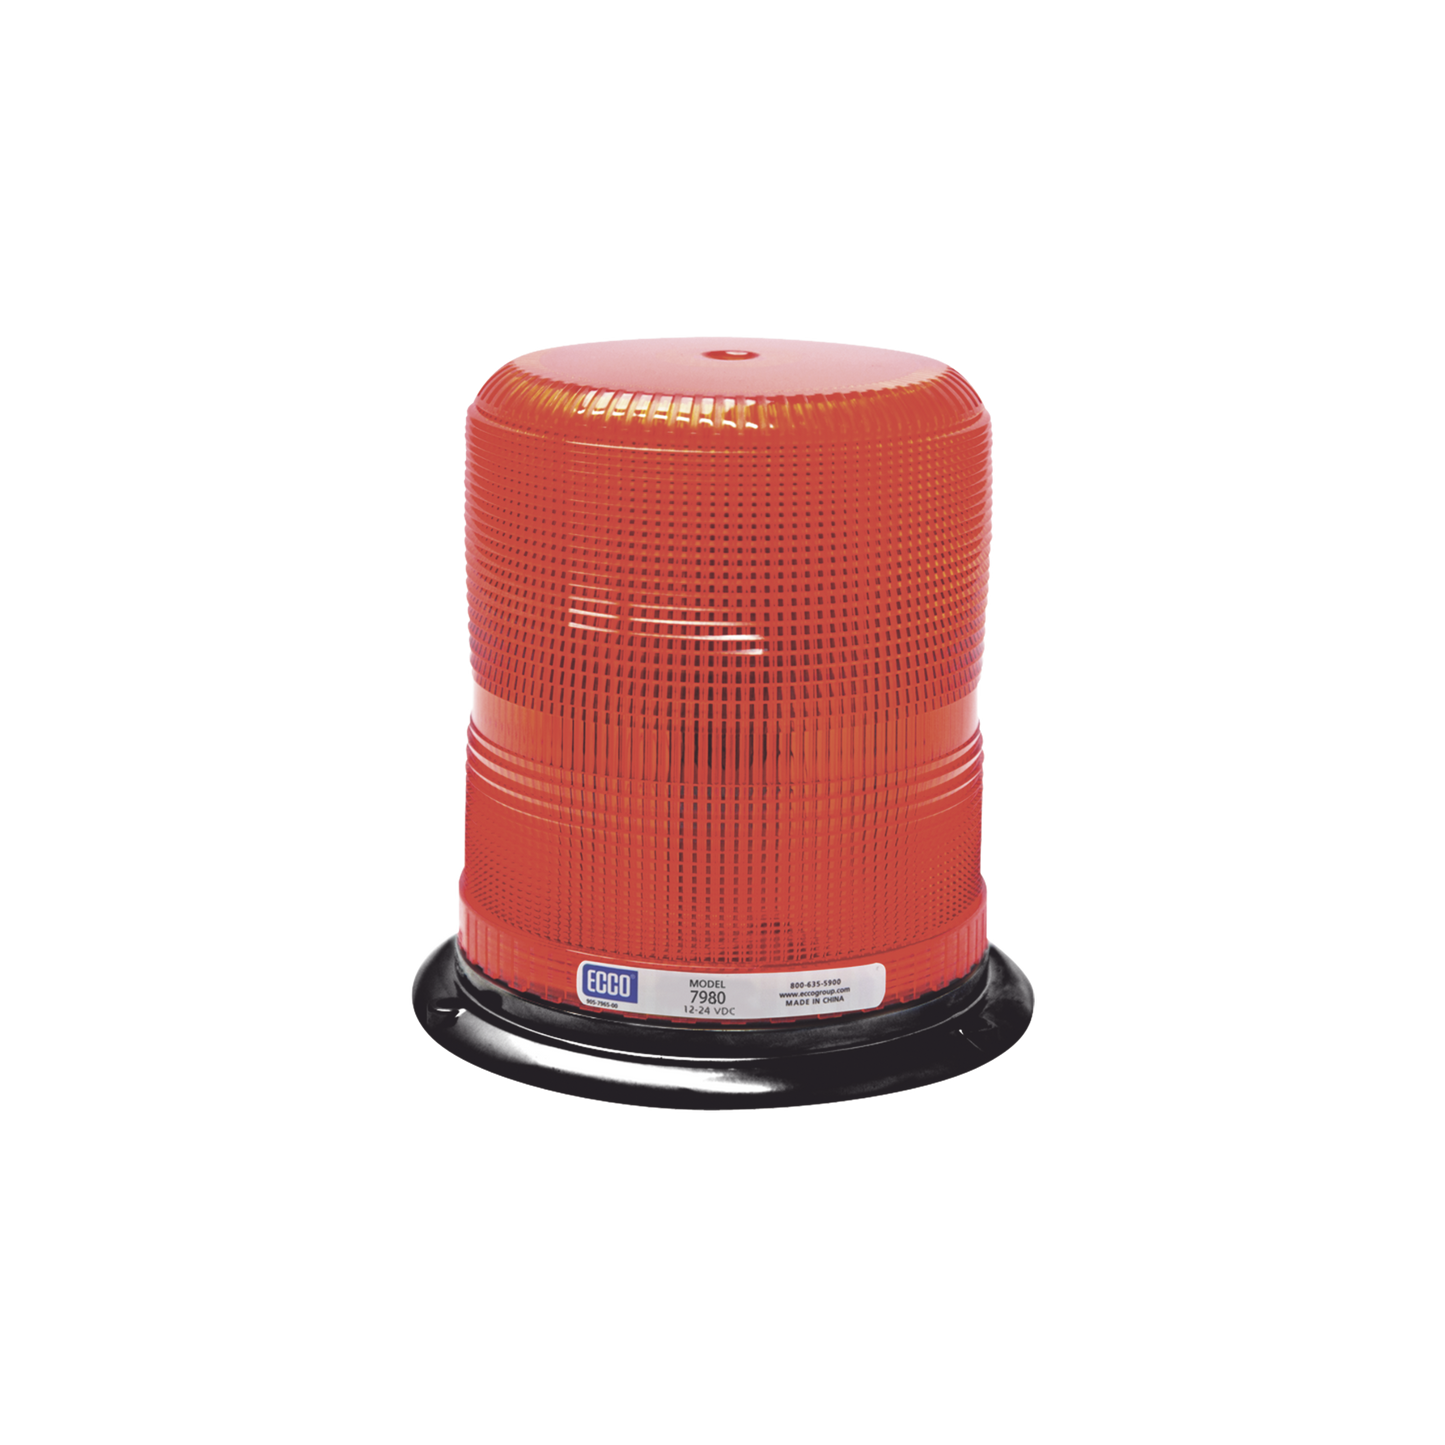 Baliza LED  Series X7980 Pulse II SAE Clase I, color rojo